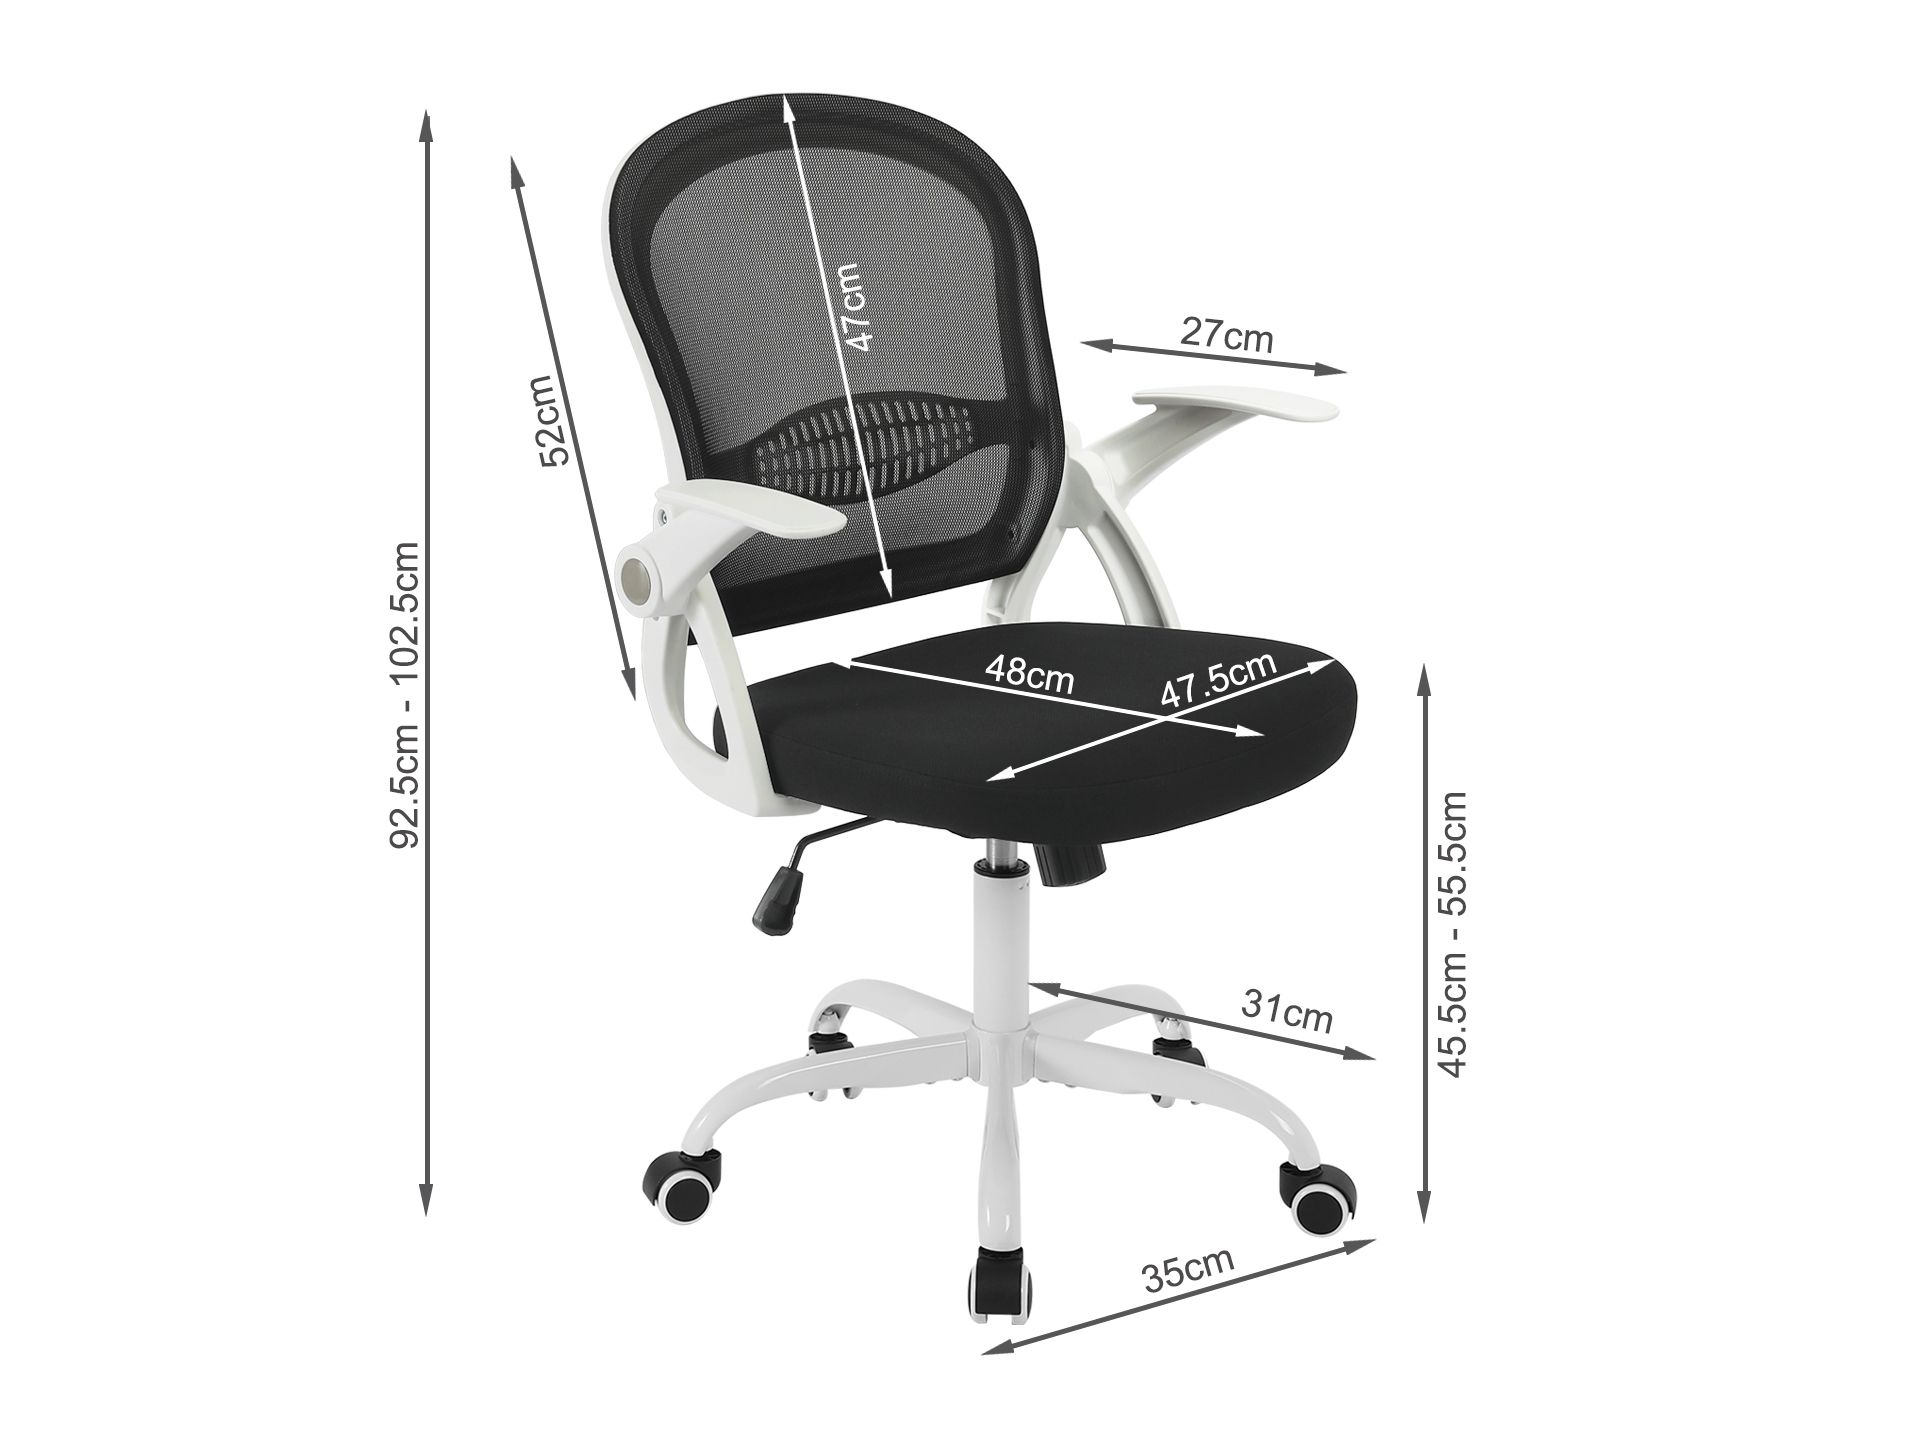 Sean Office Chair - Black